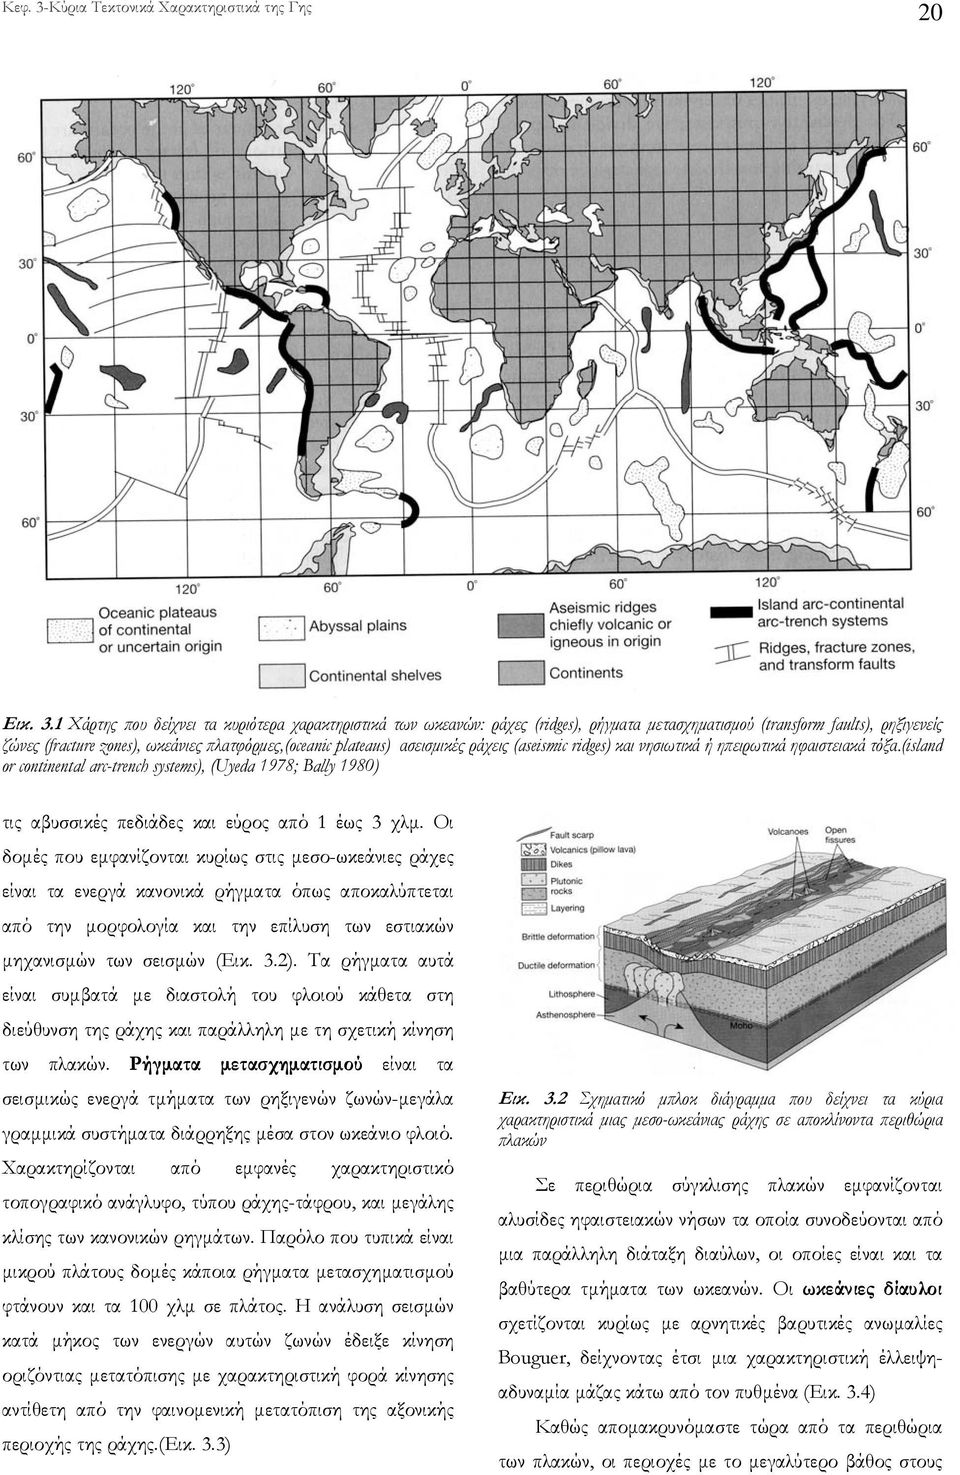 ασεισµικές ράχεις (aseismic ridges) και νησιωτικά ή ηπειρωτικά ηφαιστειακά τόξα.(island or continental arc-trench systems), (Uyeda 1978; Bally 1980) τις αβυσσικές πεδιάδες και εύρος από 1 έως 3 χλµ.